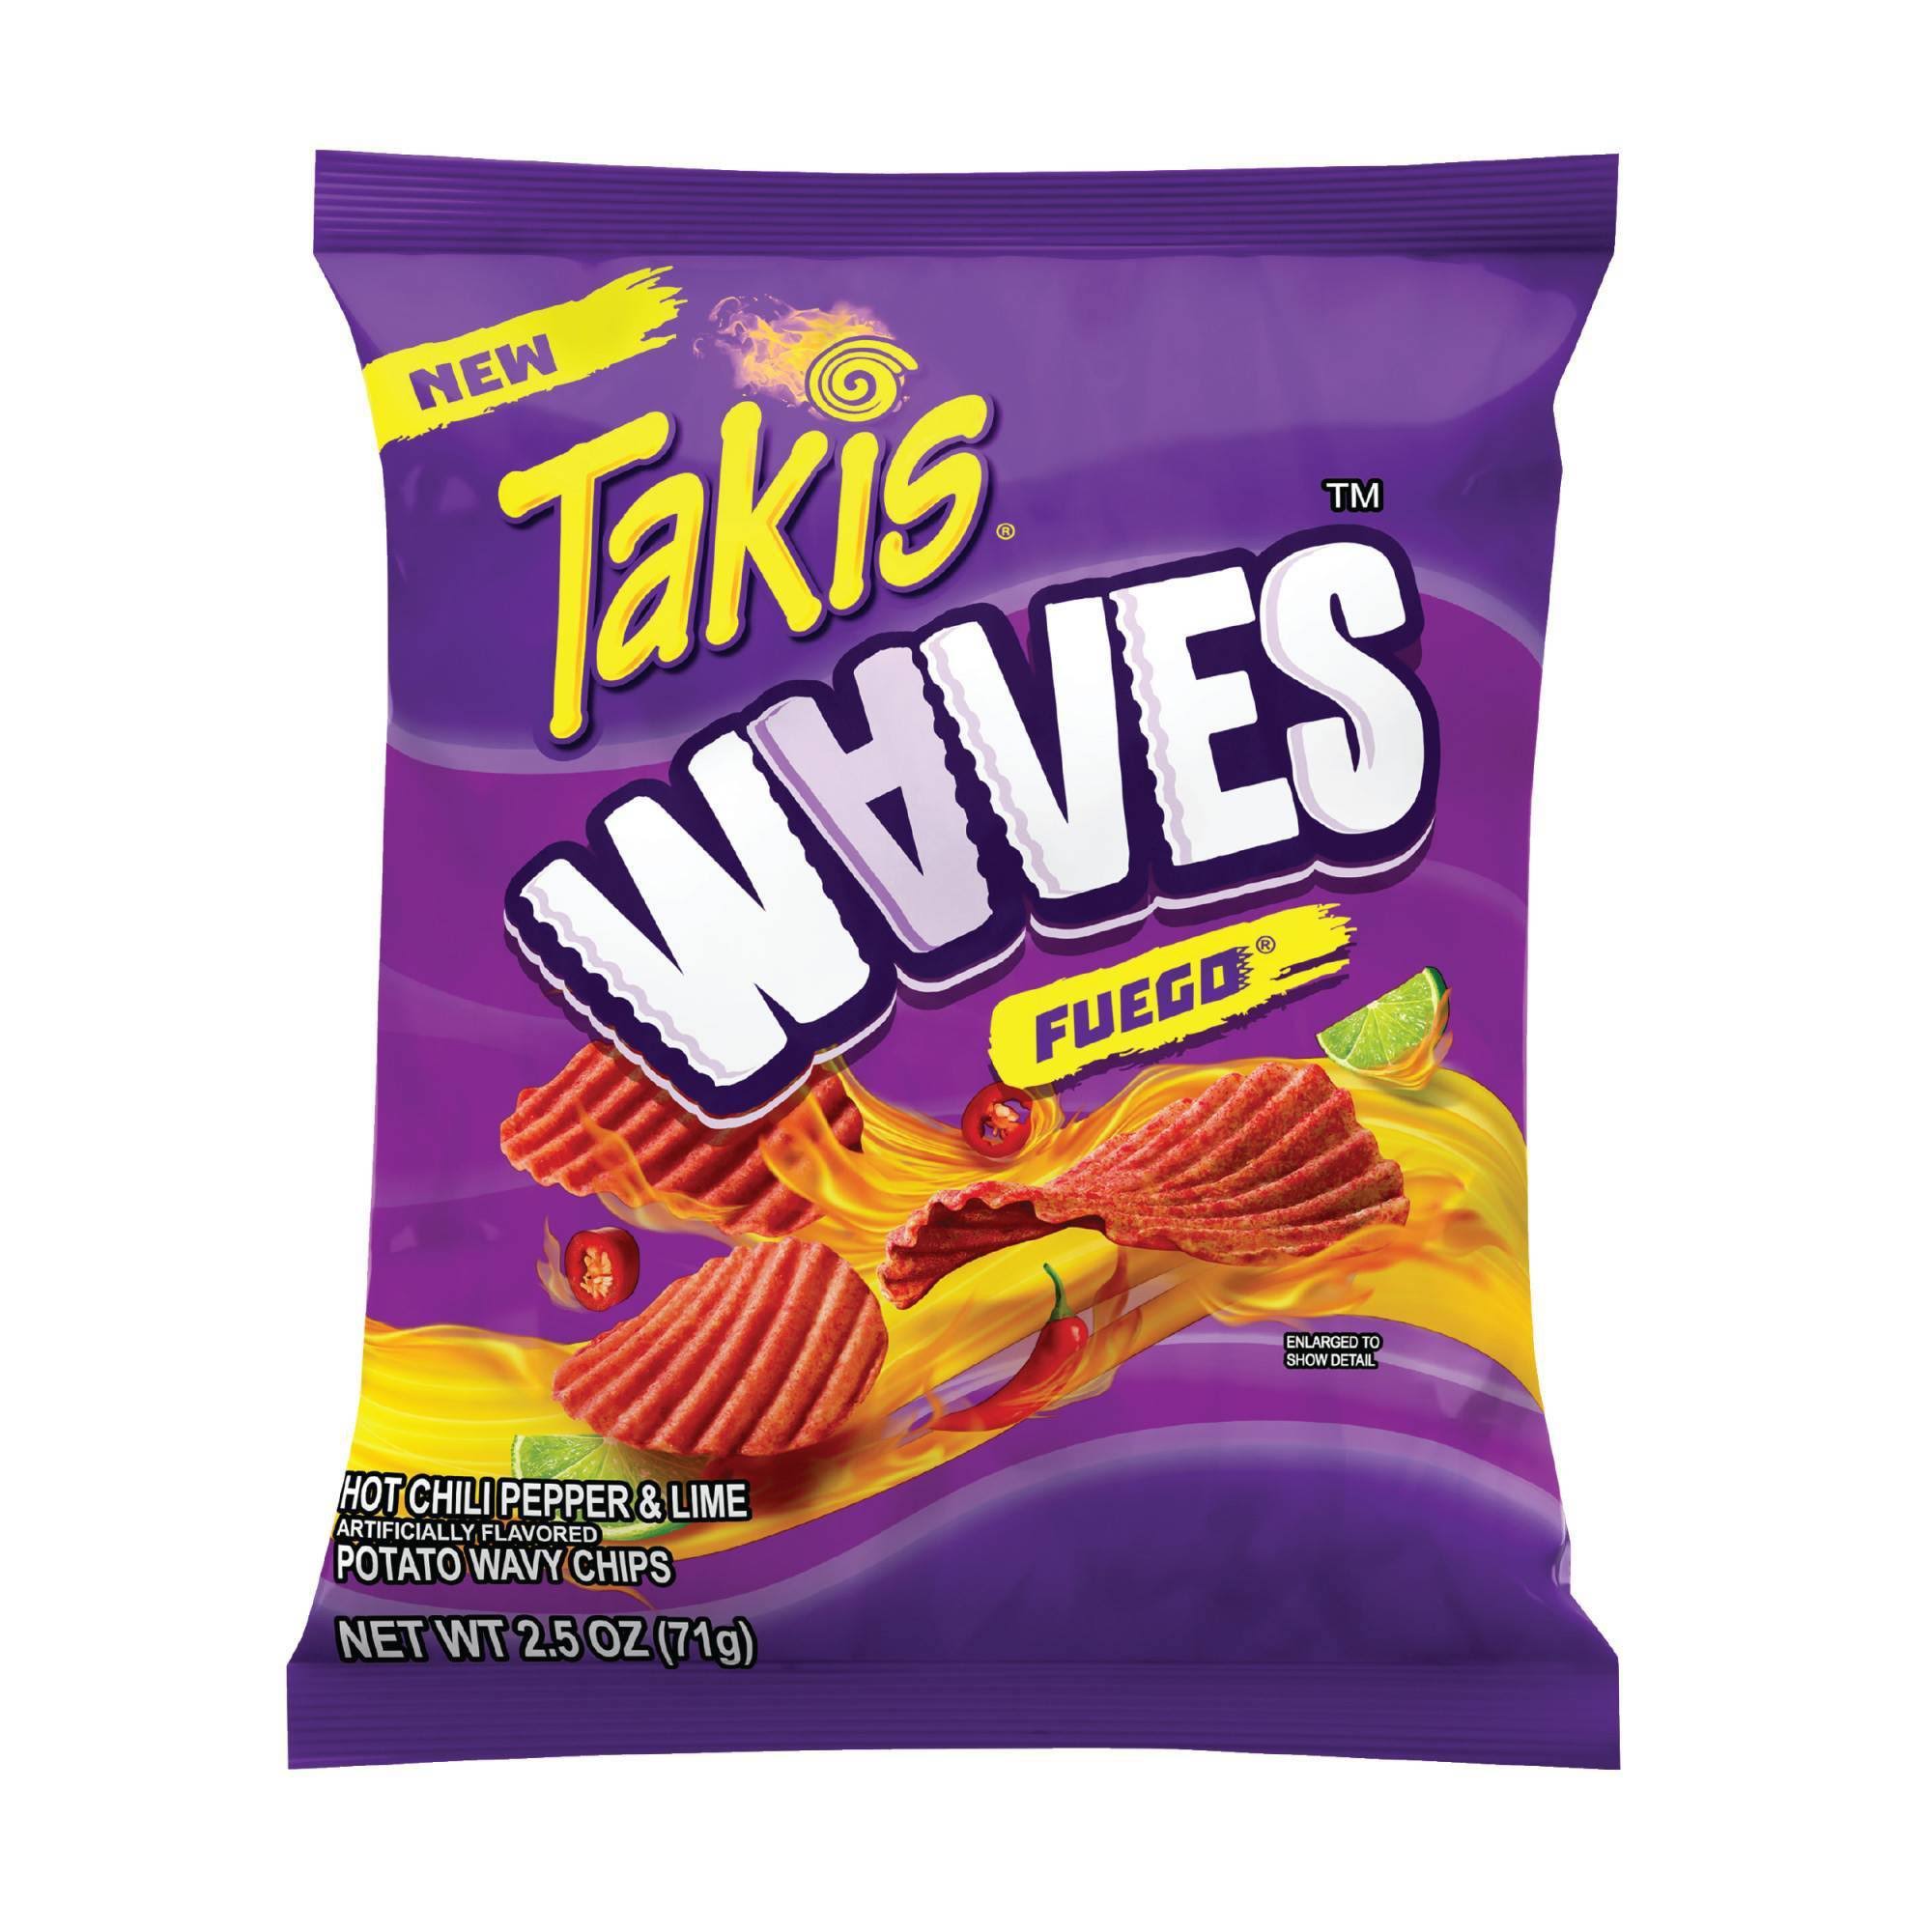 Takis Waves Potato Chips, Fuego - 2.5 oz